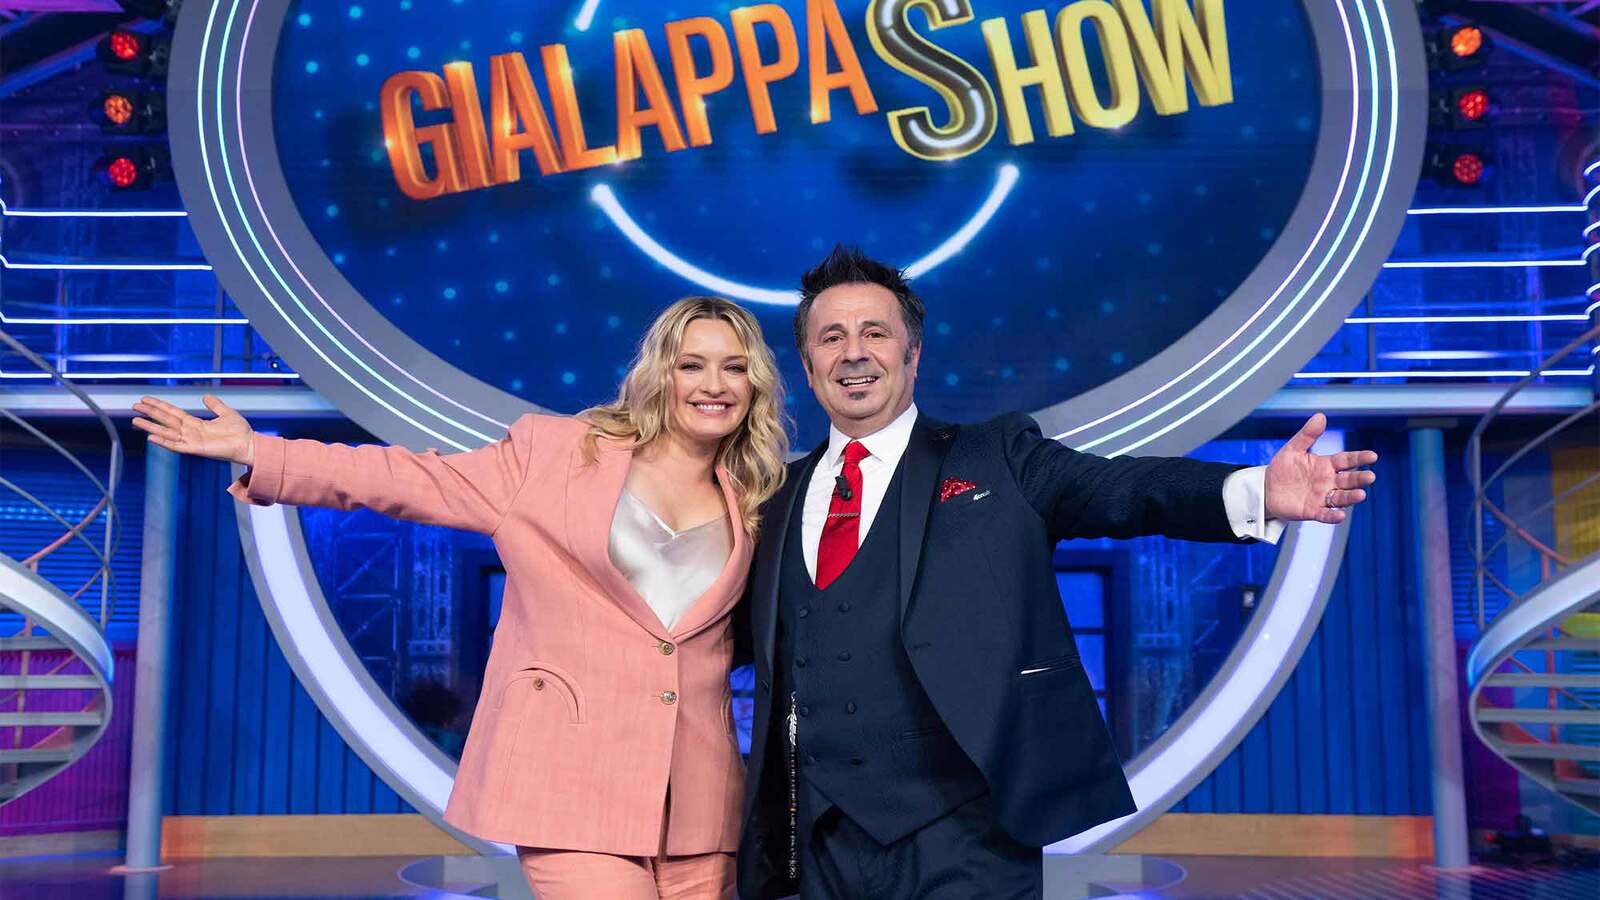 GialappaShow su TV8 chiude con il record di ascolti: foto e video dell'ultima puntata